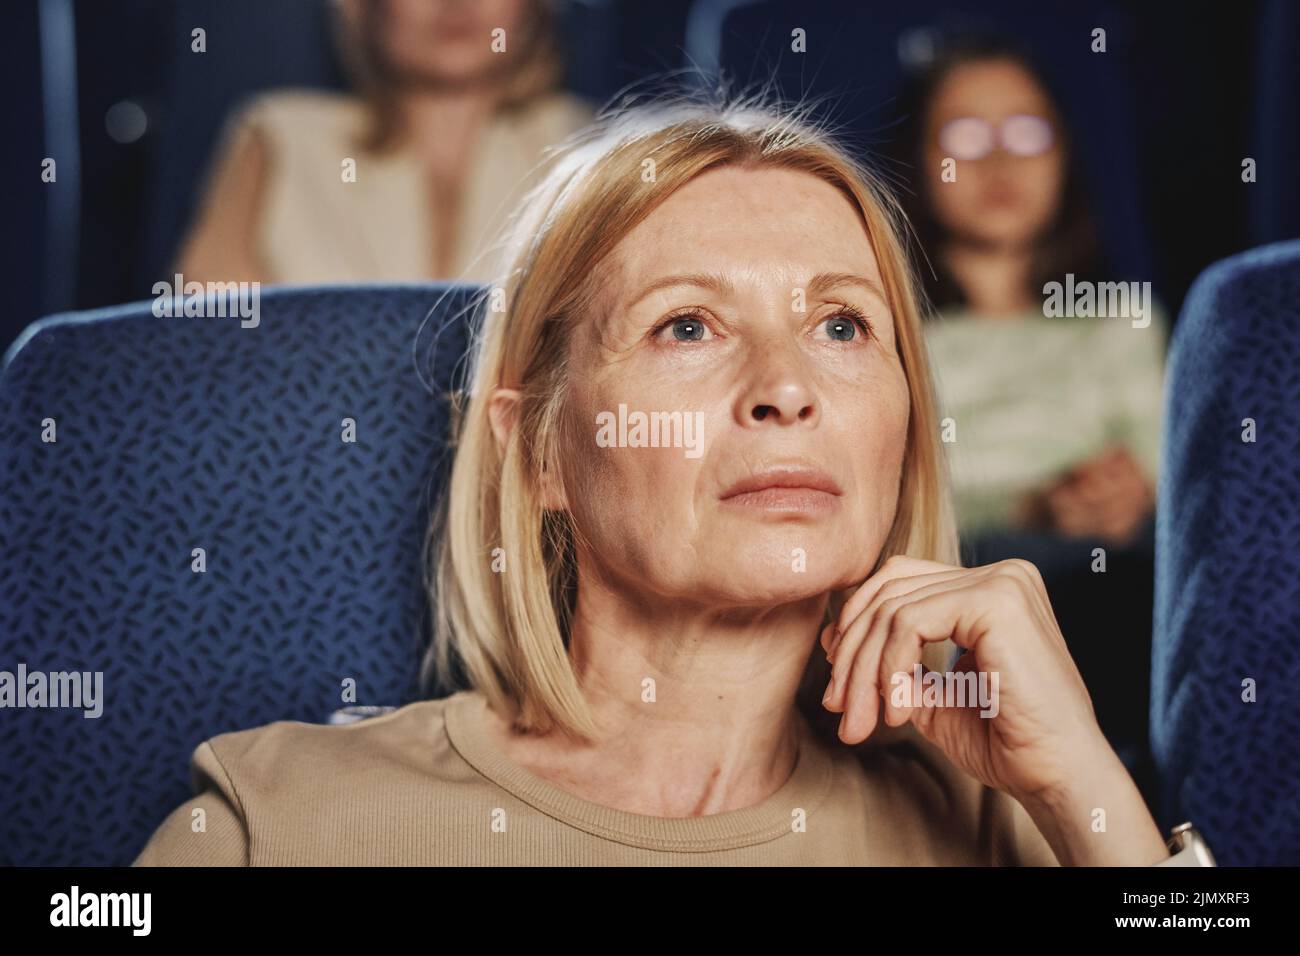 Nahaufnahme eines Porträts einer erwachsenen kaukasischen Frau mit blonden Haaren, die einen Kinofilm sieht Stockfoto